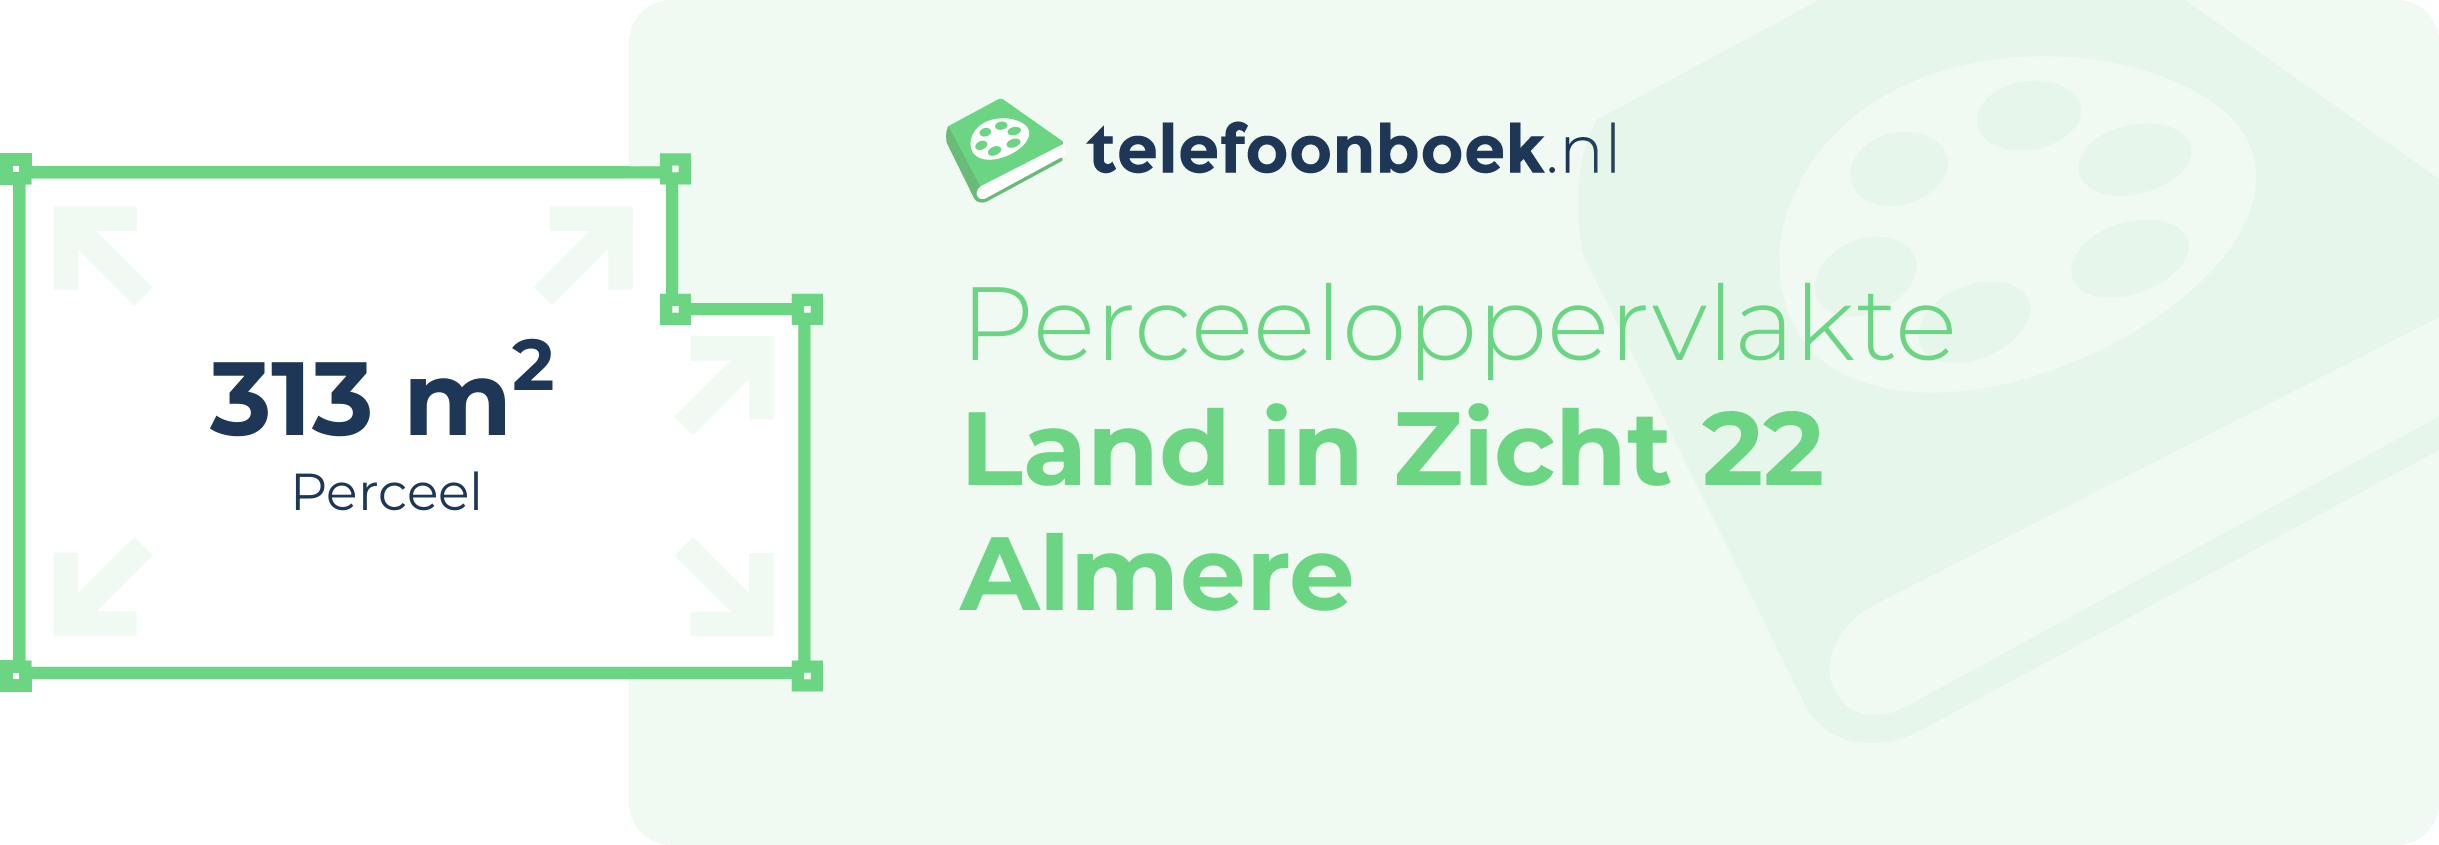 Perceeloppervlakte Land In Zicht 22 Almere